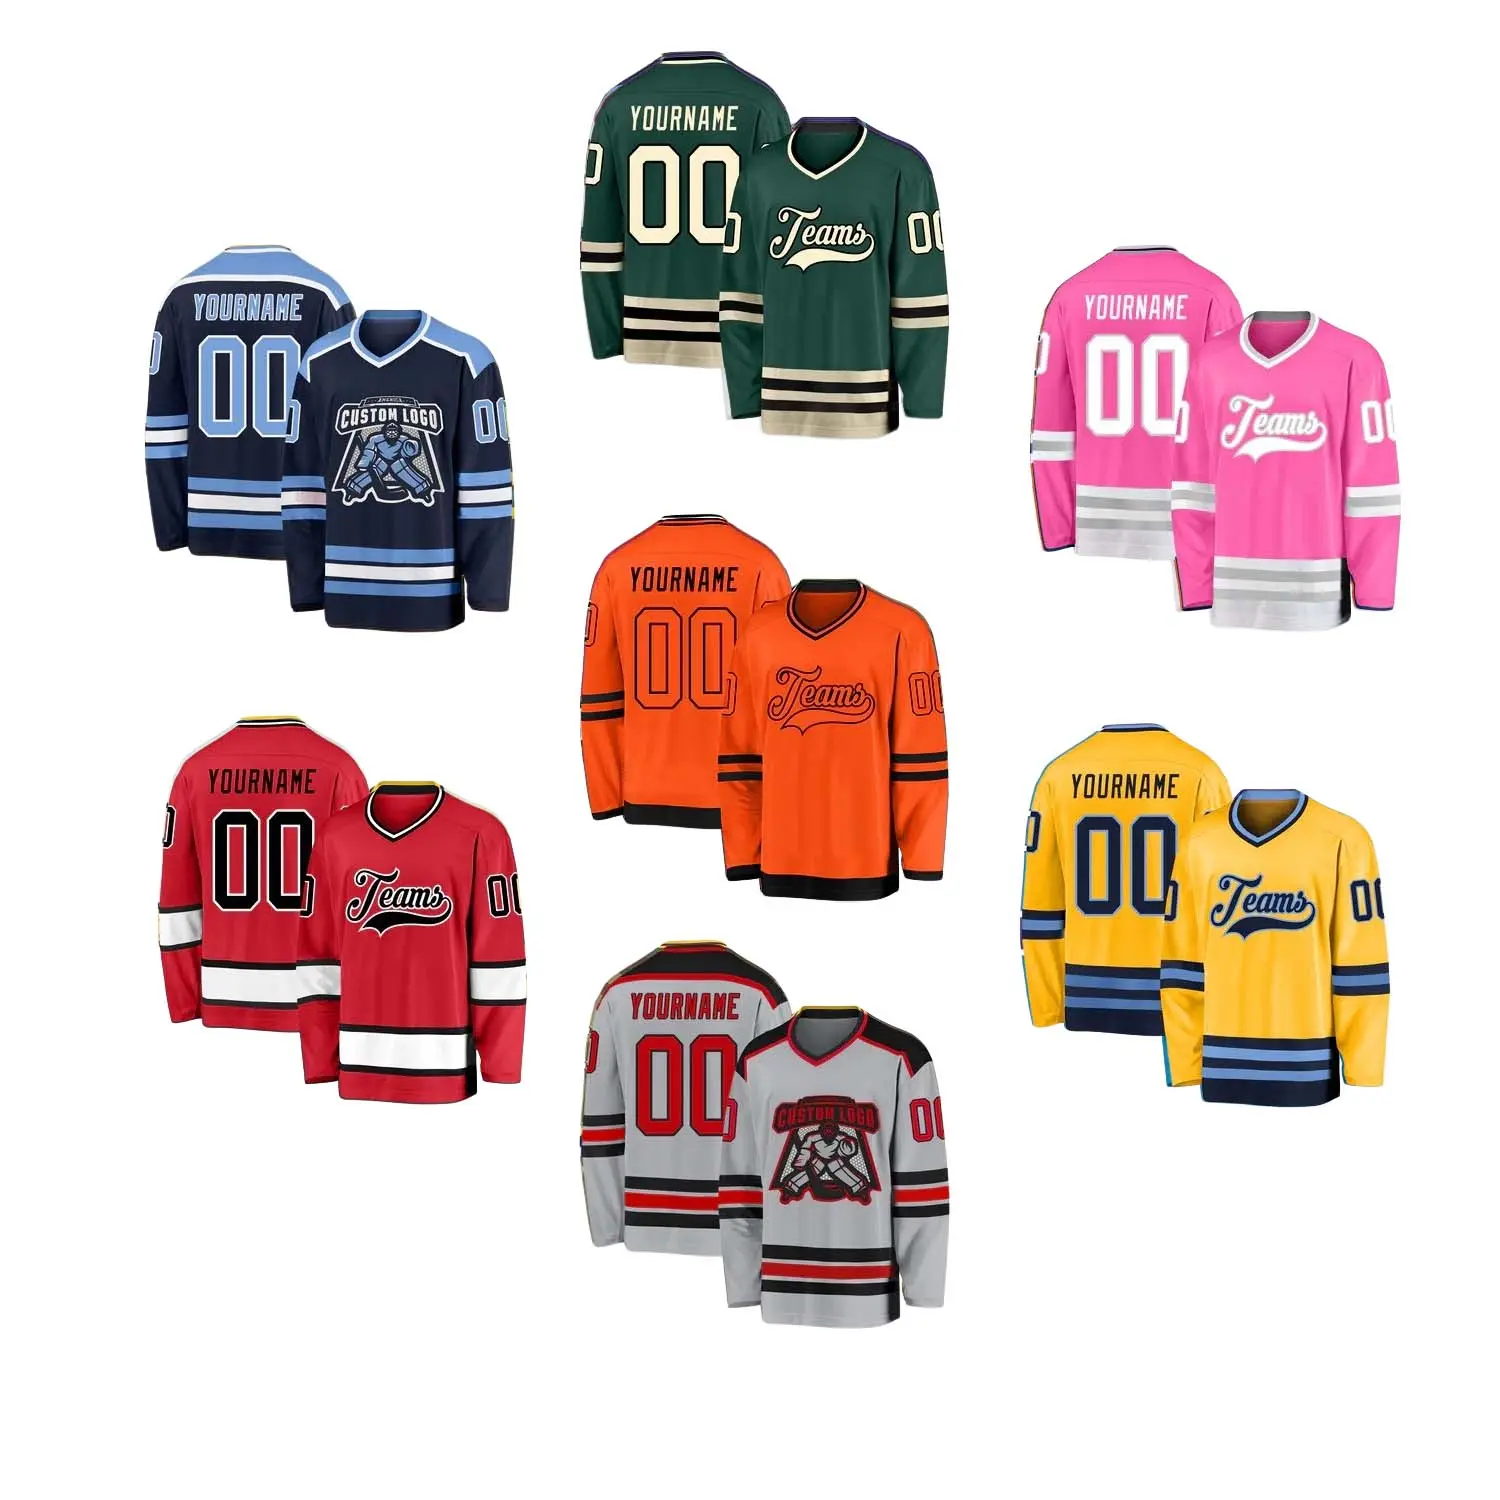 Customized Embroidered NHLing seattle kraken ice hockey jerseys for men design youth hockey wear sublimated ice hockey uniform